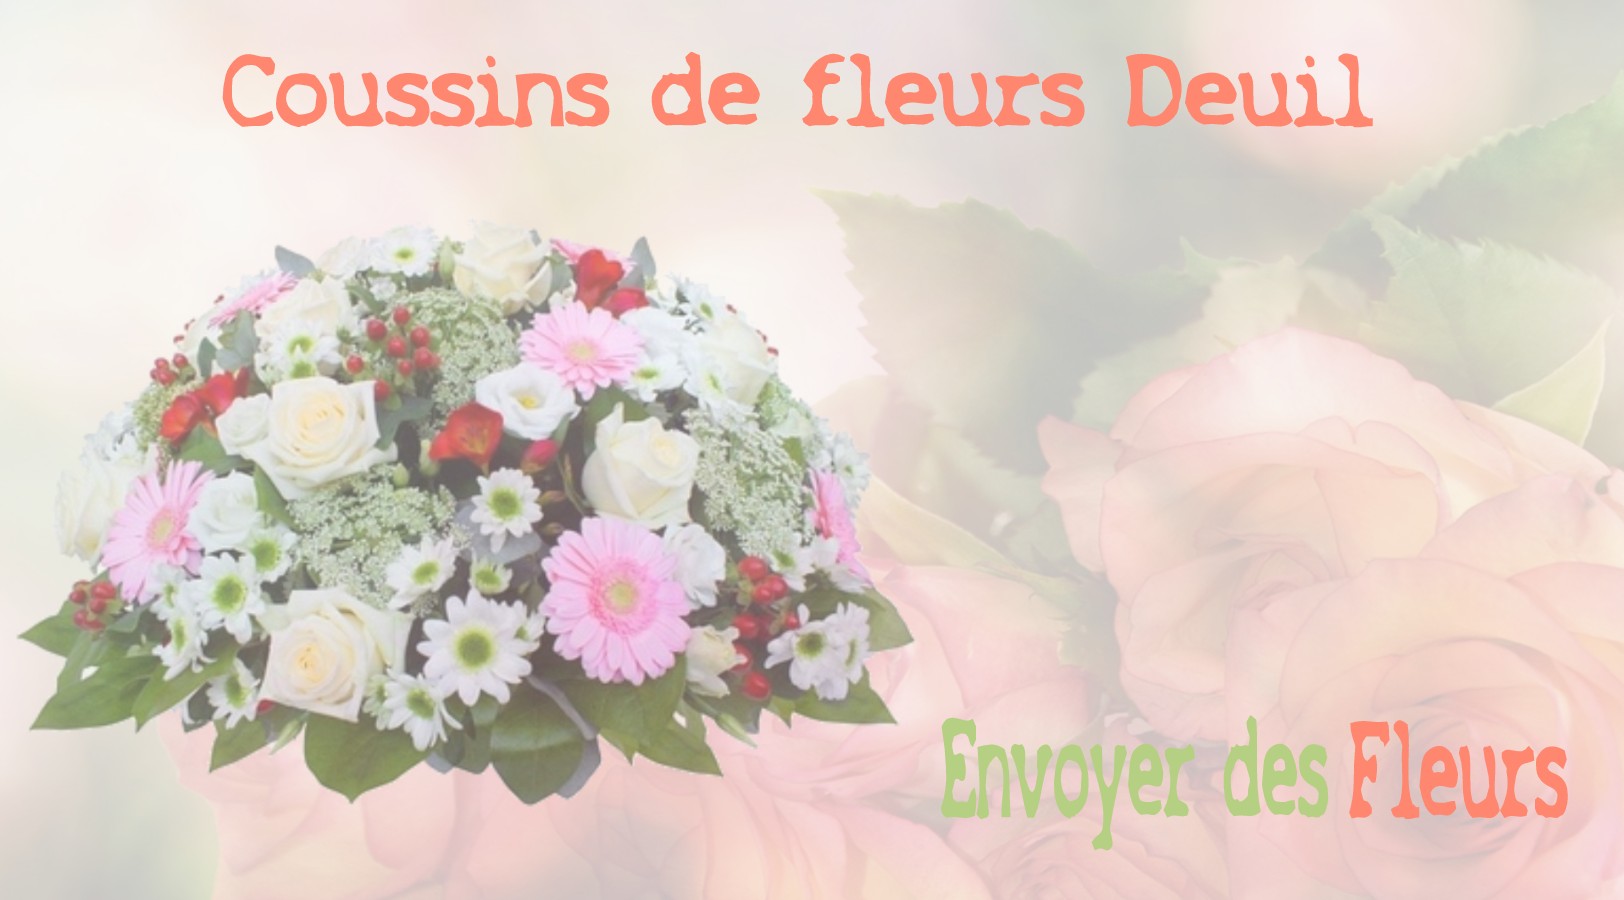 Les coussins de fleurs deuil - LIVRAISON FLEURS DEUIL A BOUSSY-SAINT-ANTOINE 91